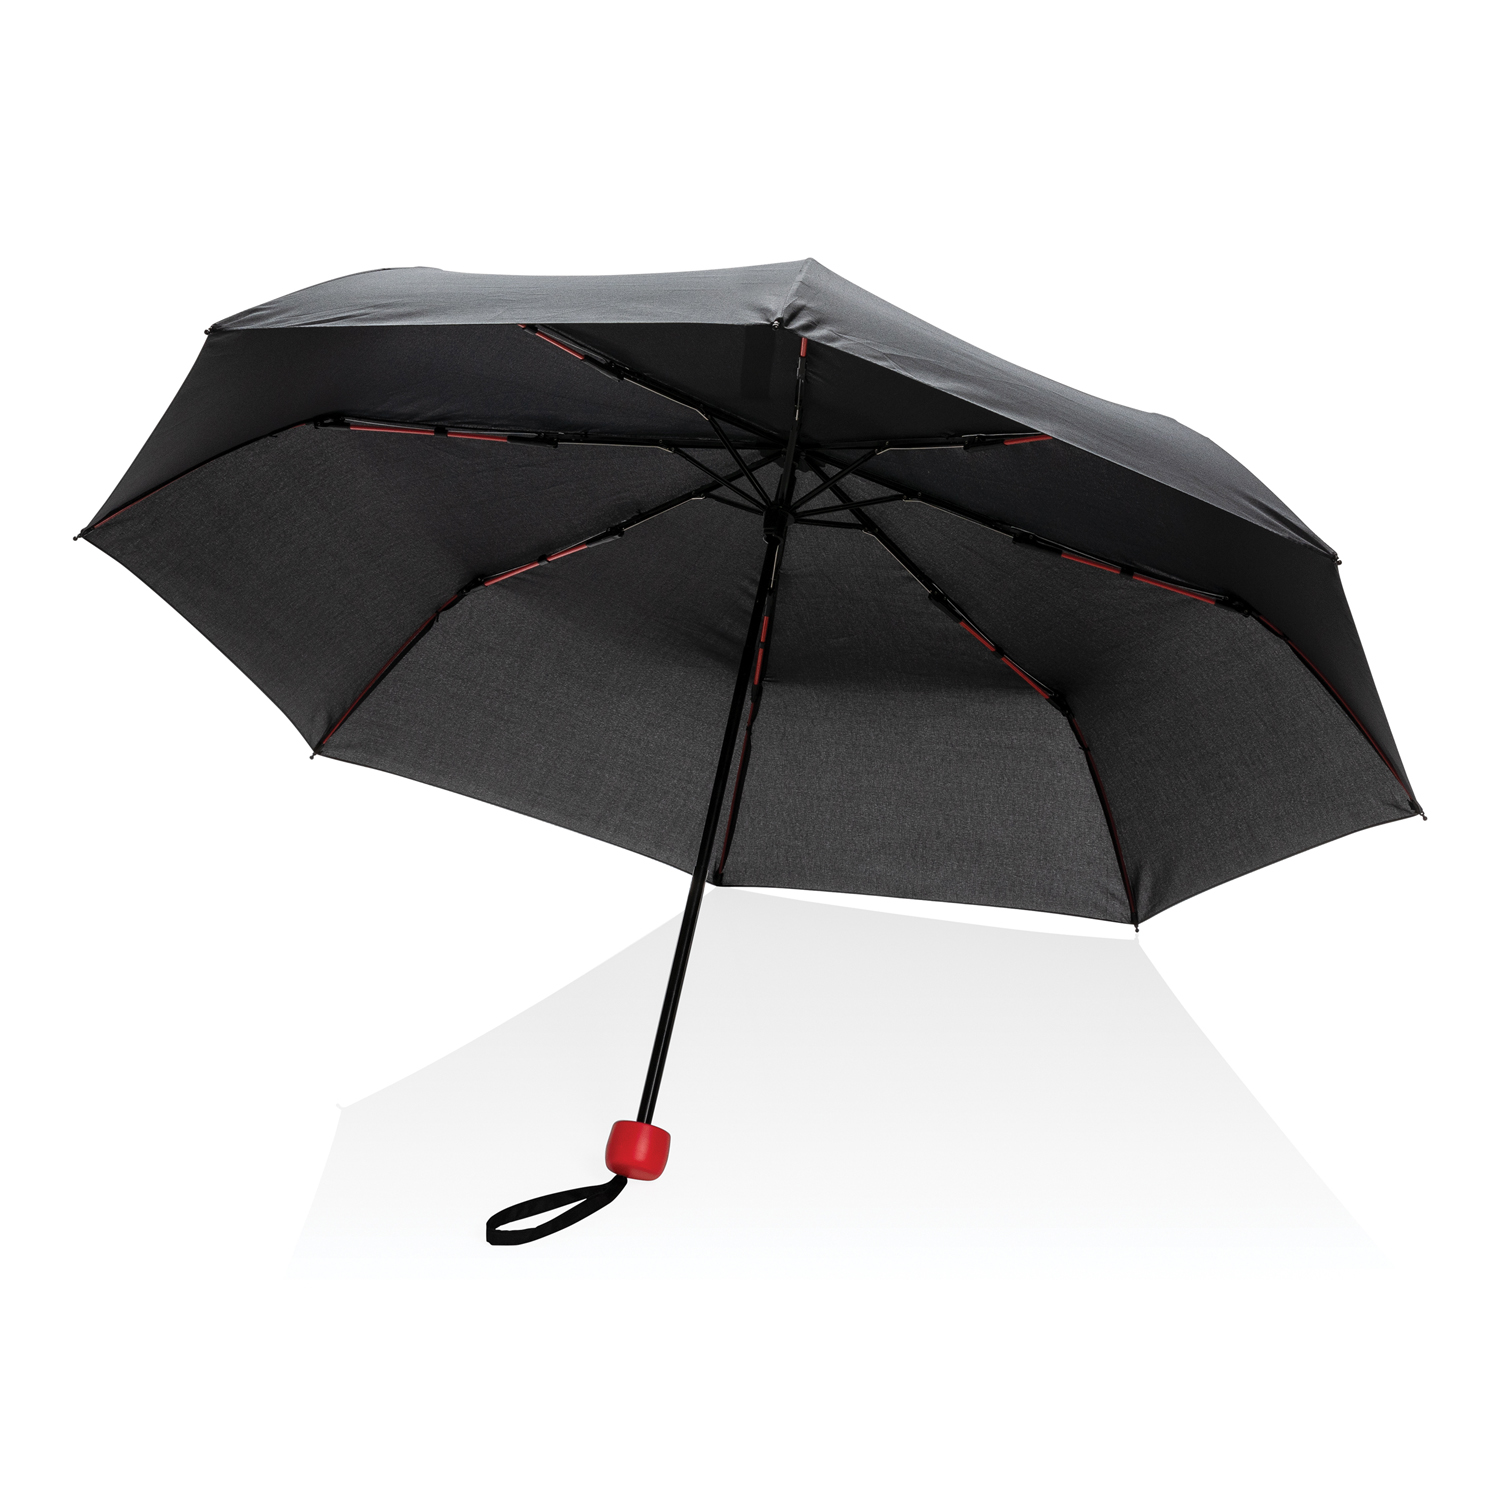 Компактный плотный зонт Impact из RPET AWARE™